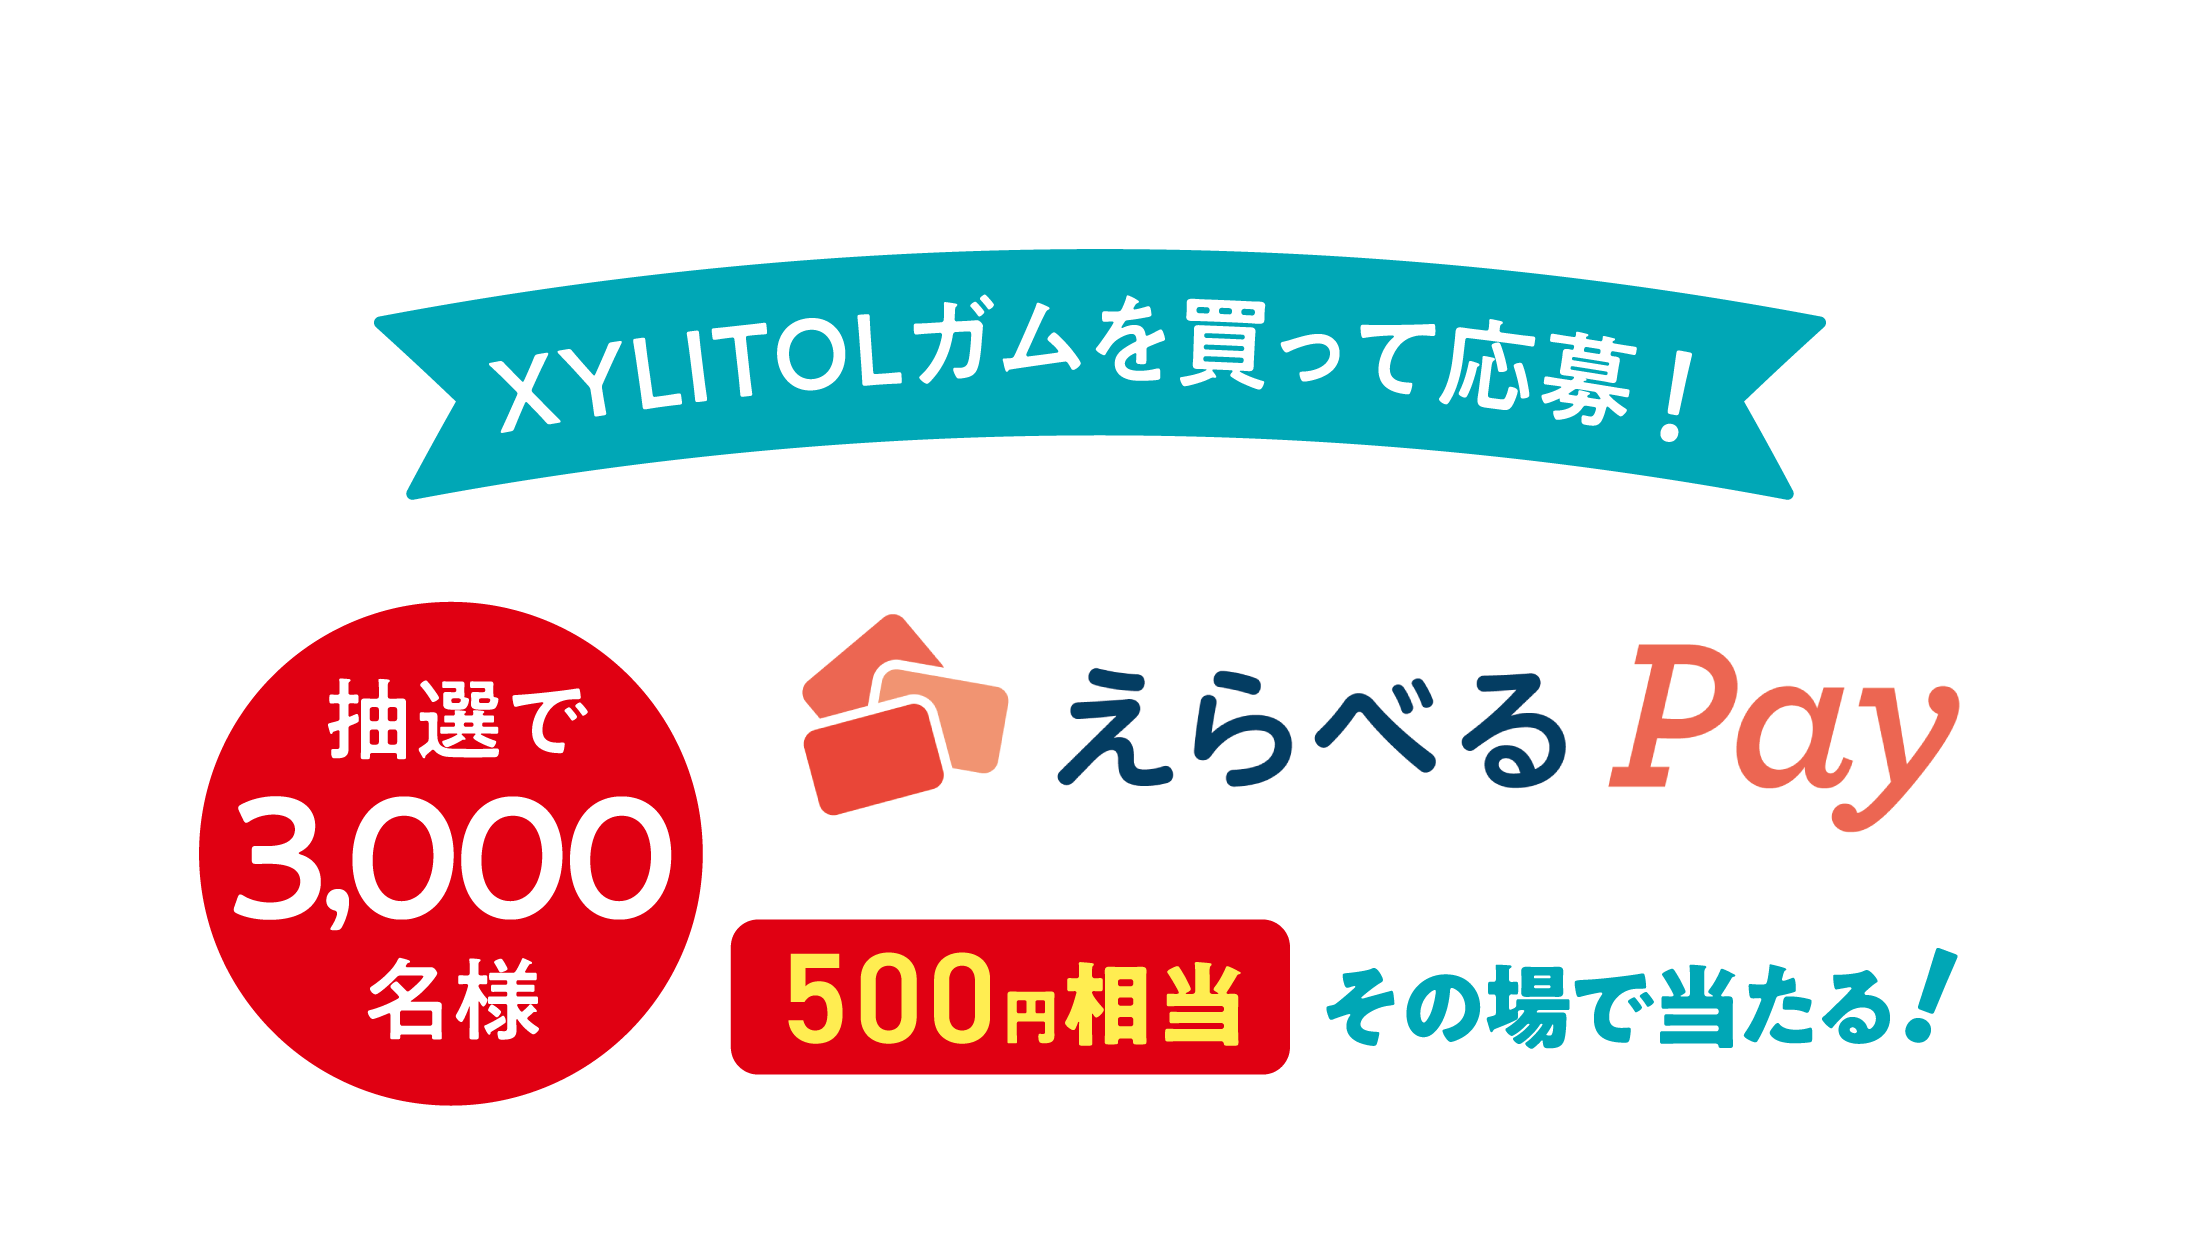 XYLITOLガムを買って応募！抽選で3,000名様『えらべるPay』500円相当 その場で当たる！